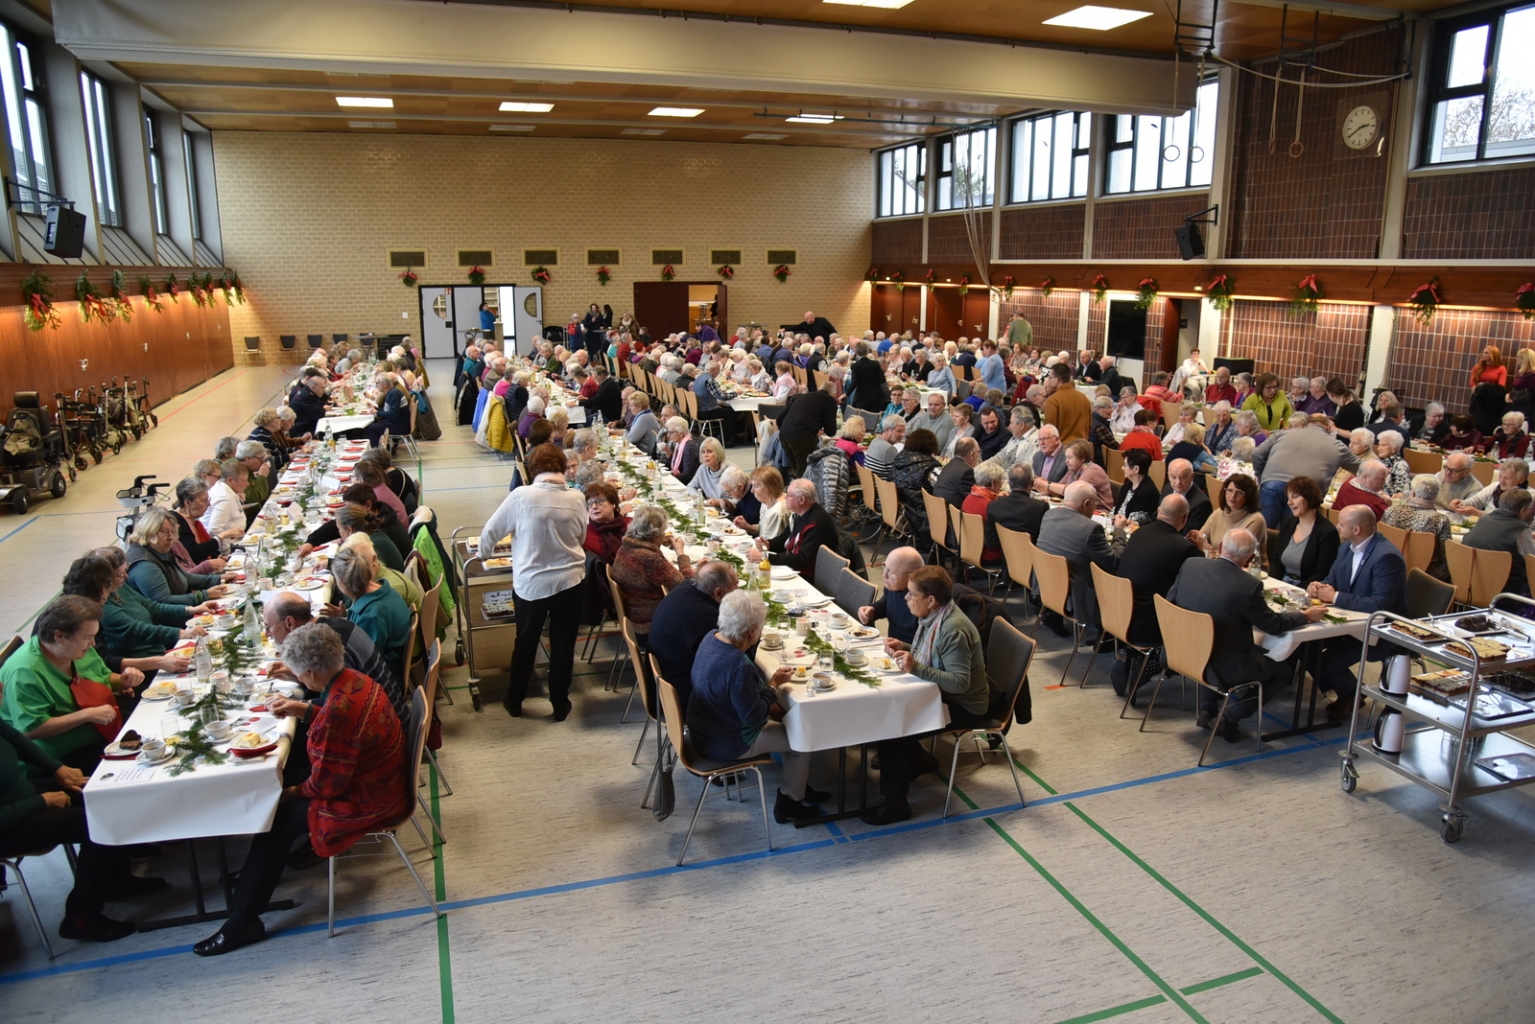 Knapp 350 Gäste kamen zur Seniorenweihnachtsfeier, die Kurpfalzhalle war gut besucht.